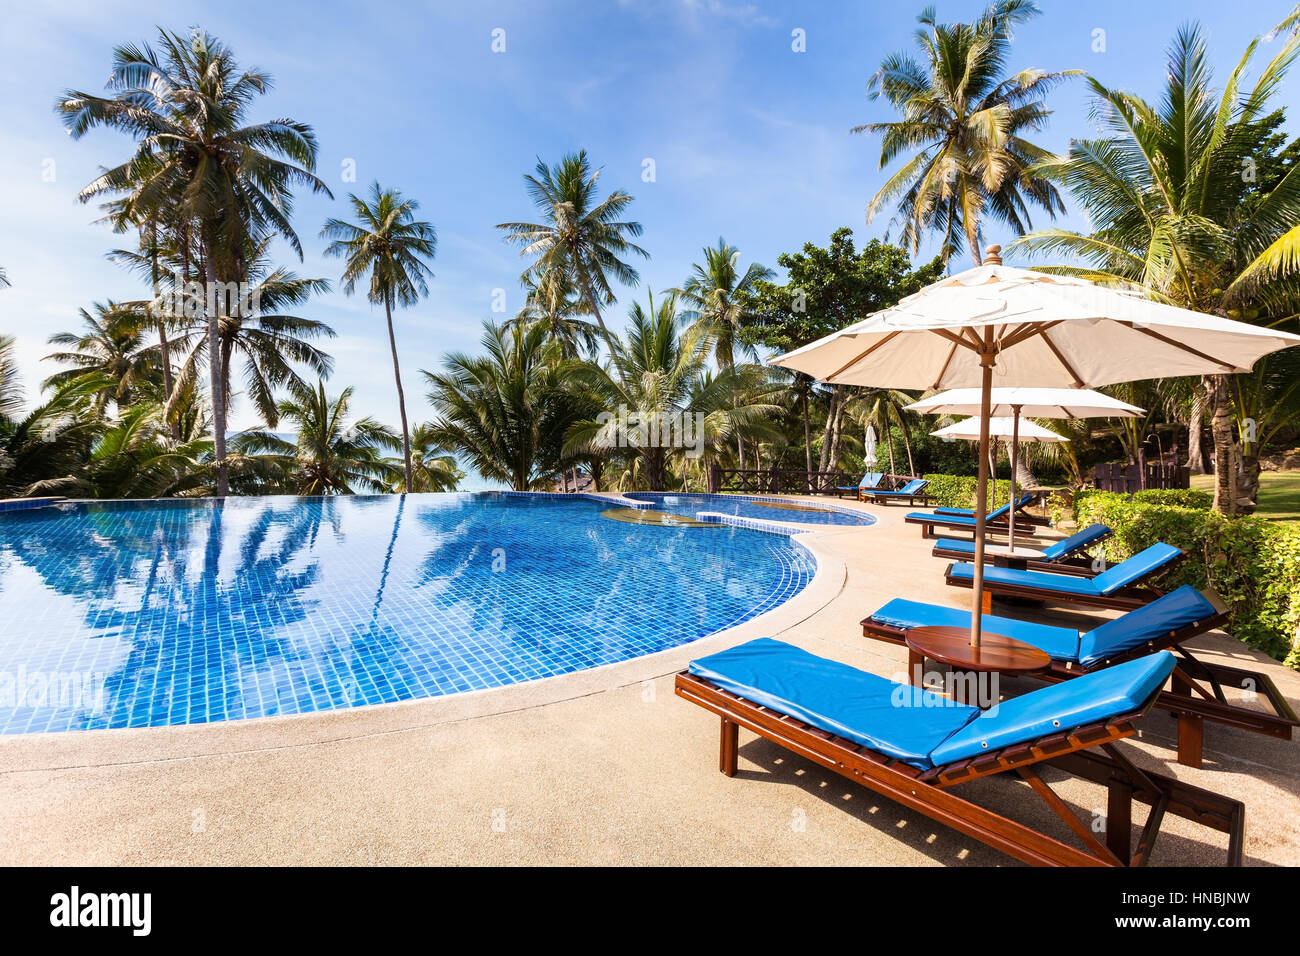 Bella spiaggia tropicale front hotel resort con piscina, lettini e palme durante un giorno caldo e soleggiato, destinazione paradiso per le vacanze Foto Stock